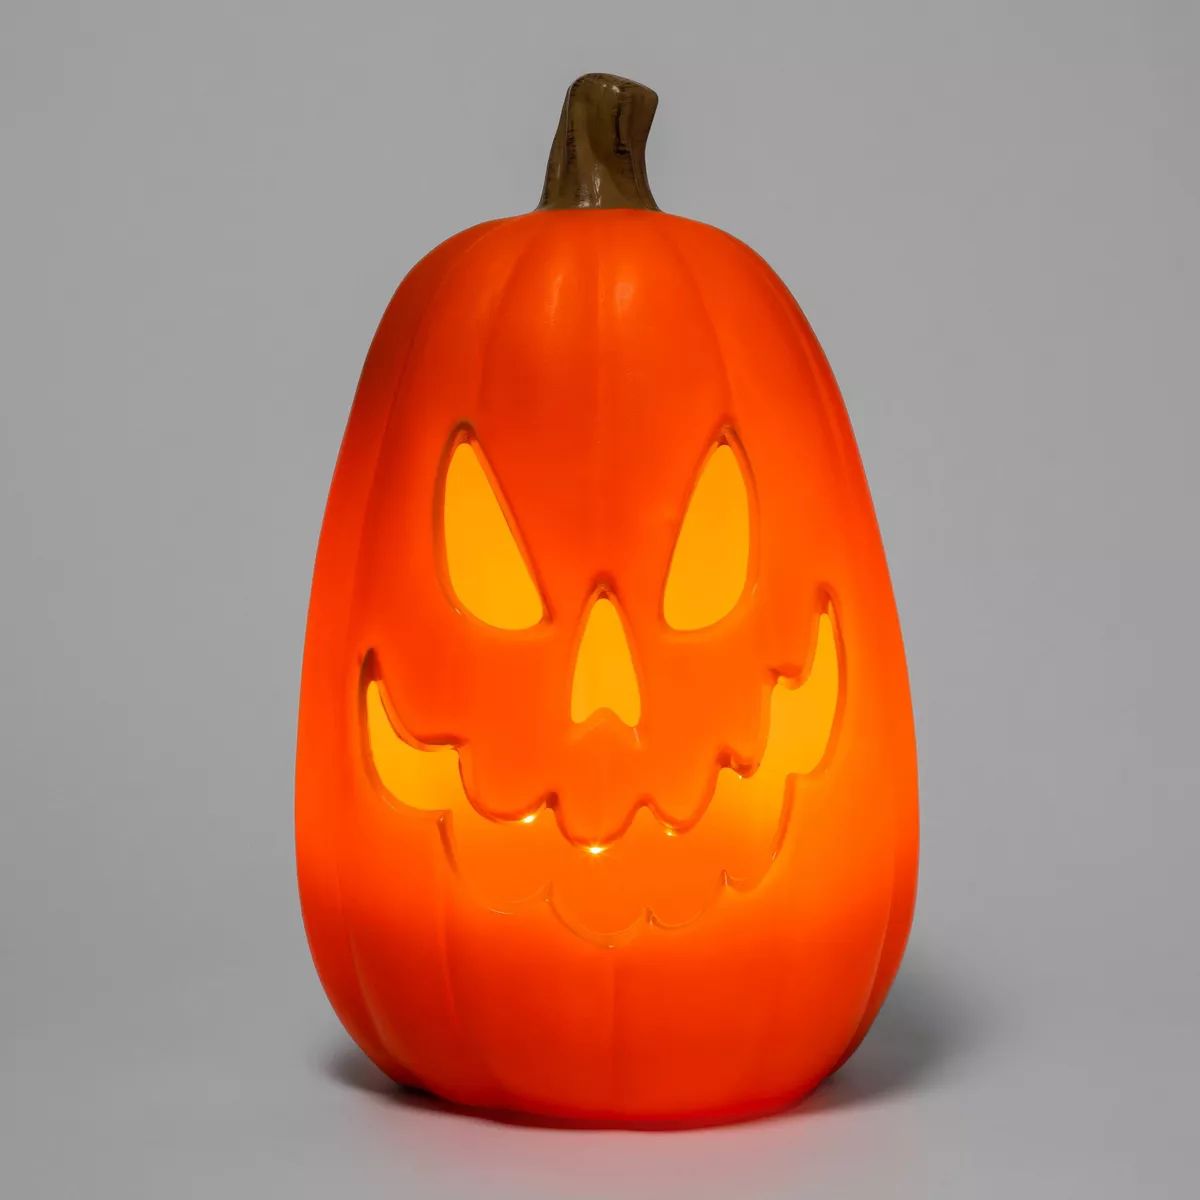 16" Light Up Pumpkin 6 Teeth Orange Halloween Decorative Prop - Hyde & EEK! Boutique™ | Target